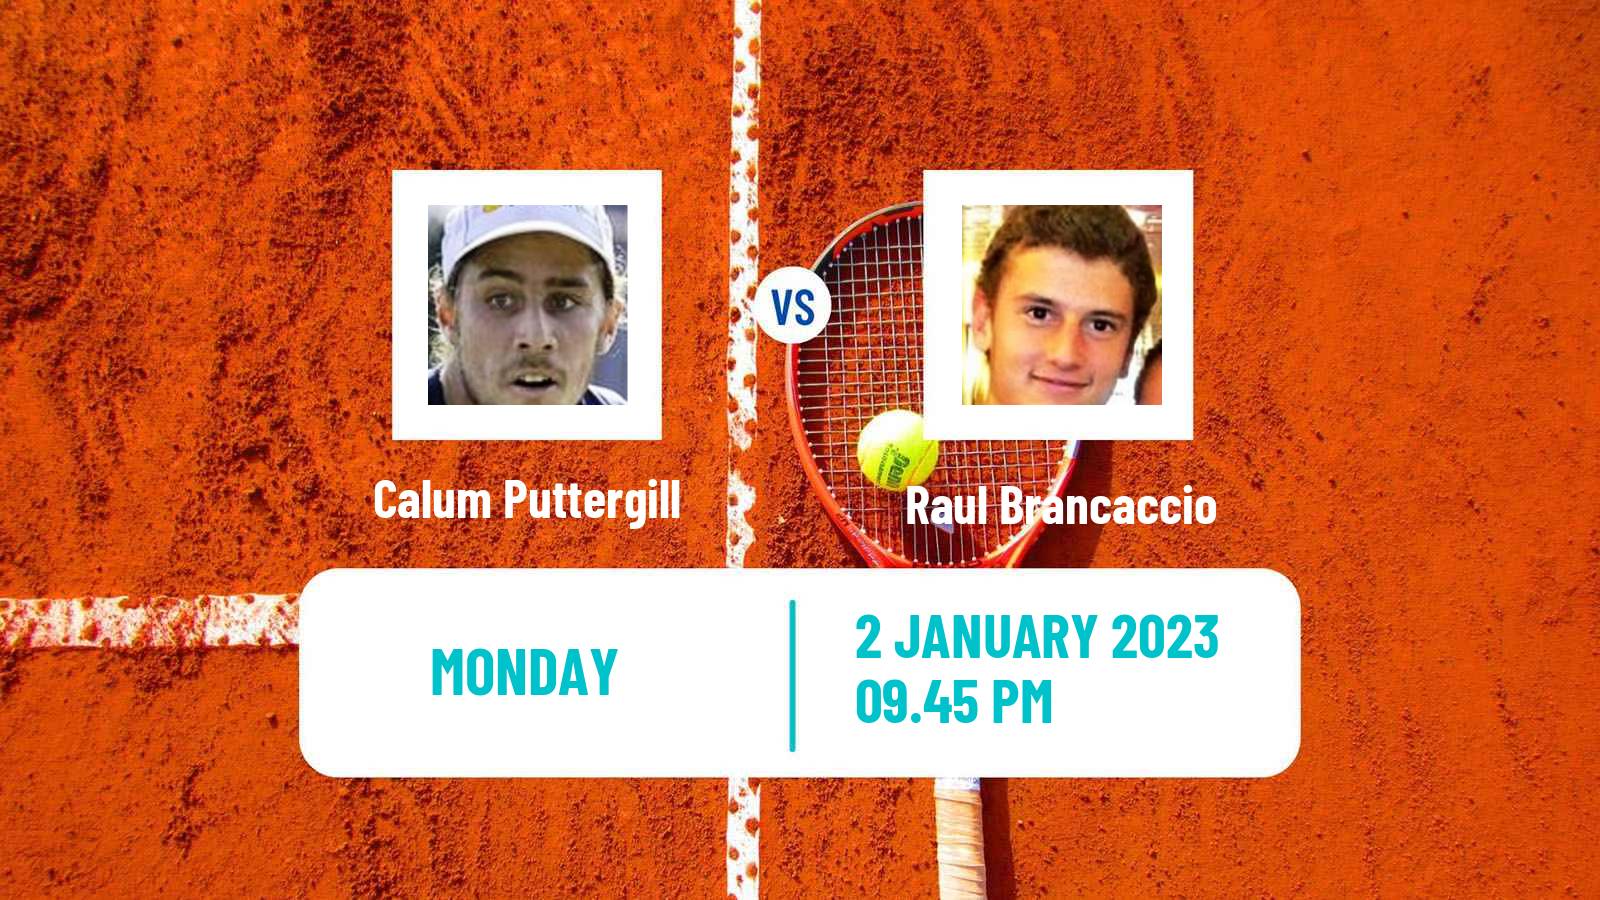 Tennis ATP Challenger Calum Puttergill - Raul Brancaccio